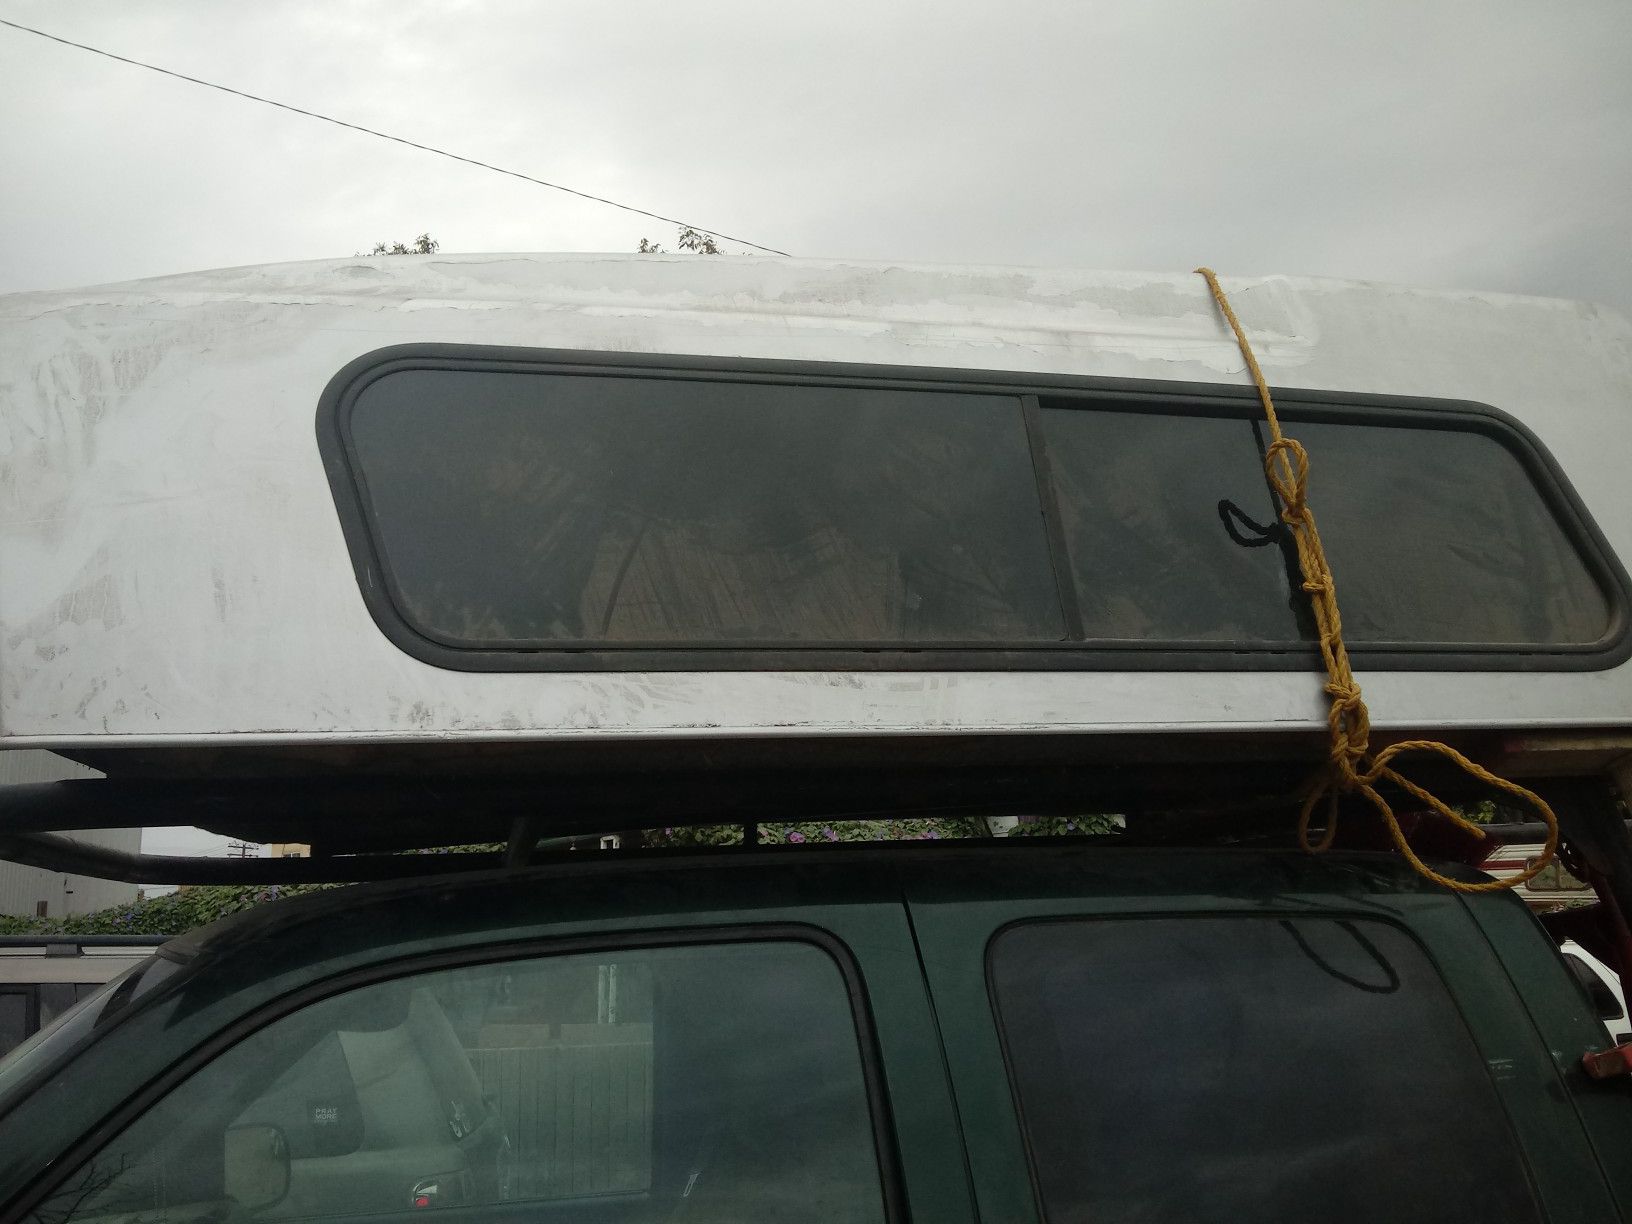 Designer camper shell fits midsize truck